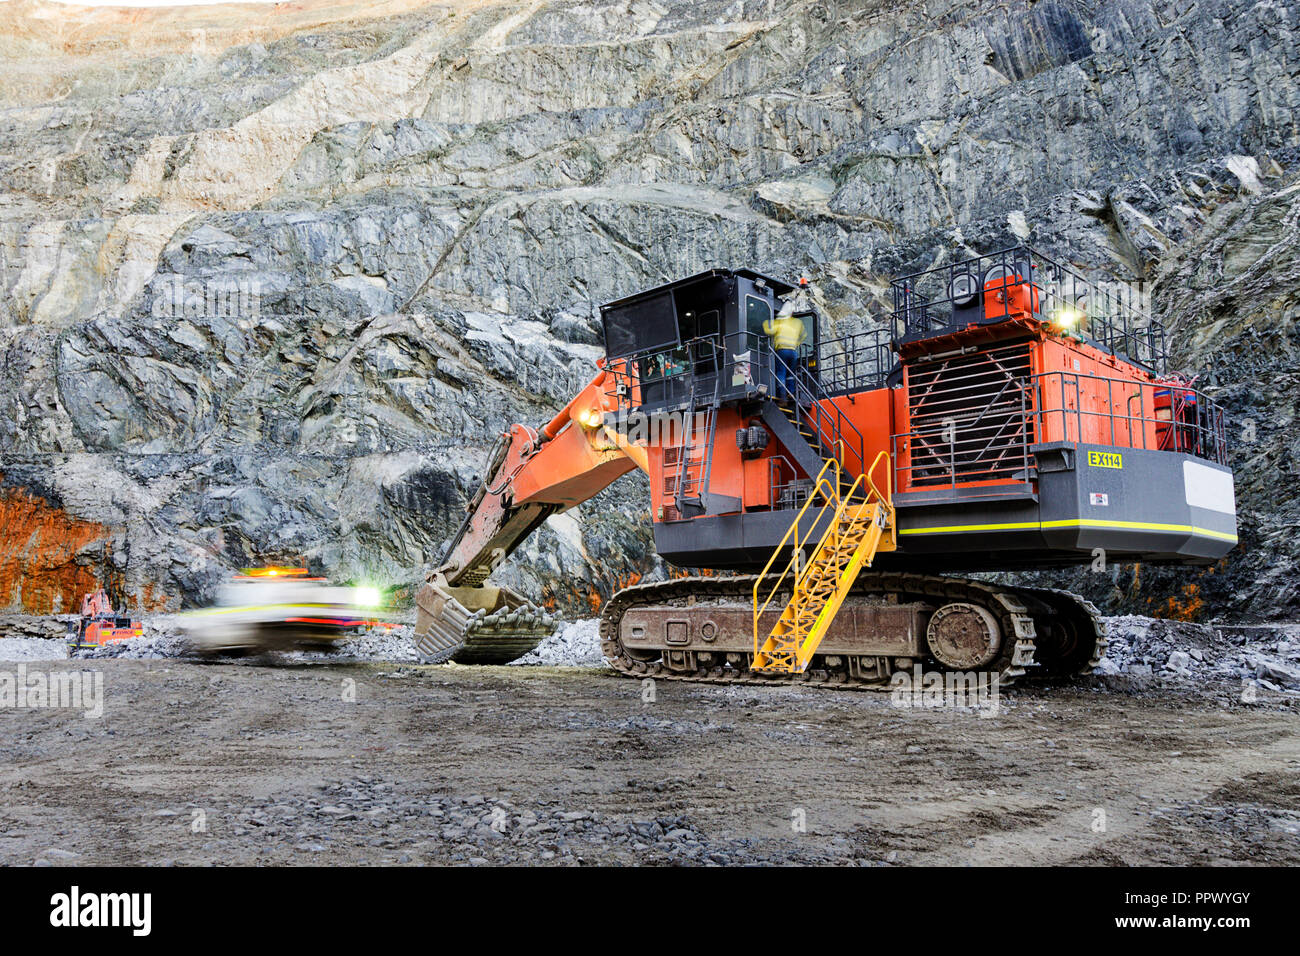 Digger trabajando en el piso de la mina a cielo abierto en el oeste de Australia. Foto de stock